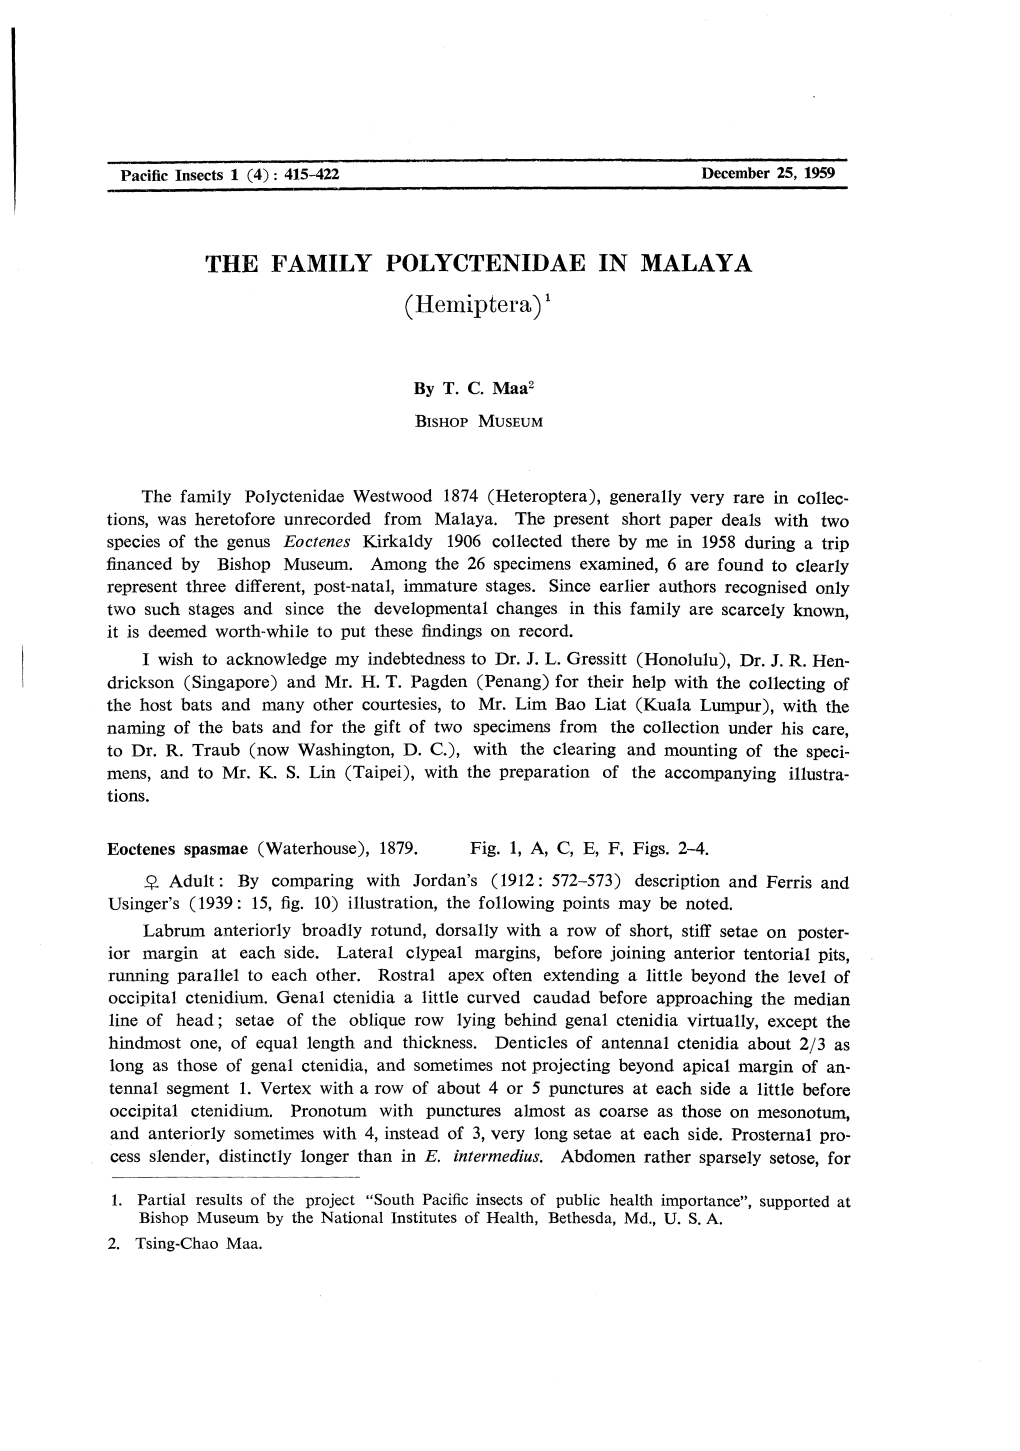 THE FAMILY POLYCTENIDAE in MALAYA (Hemiptera)*